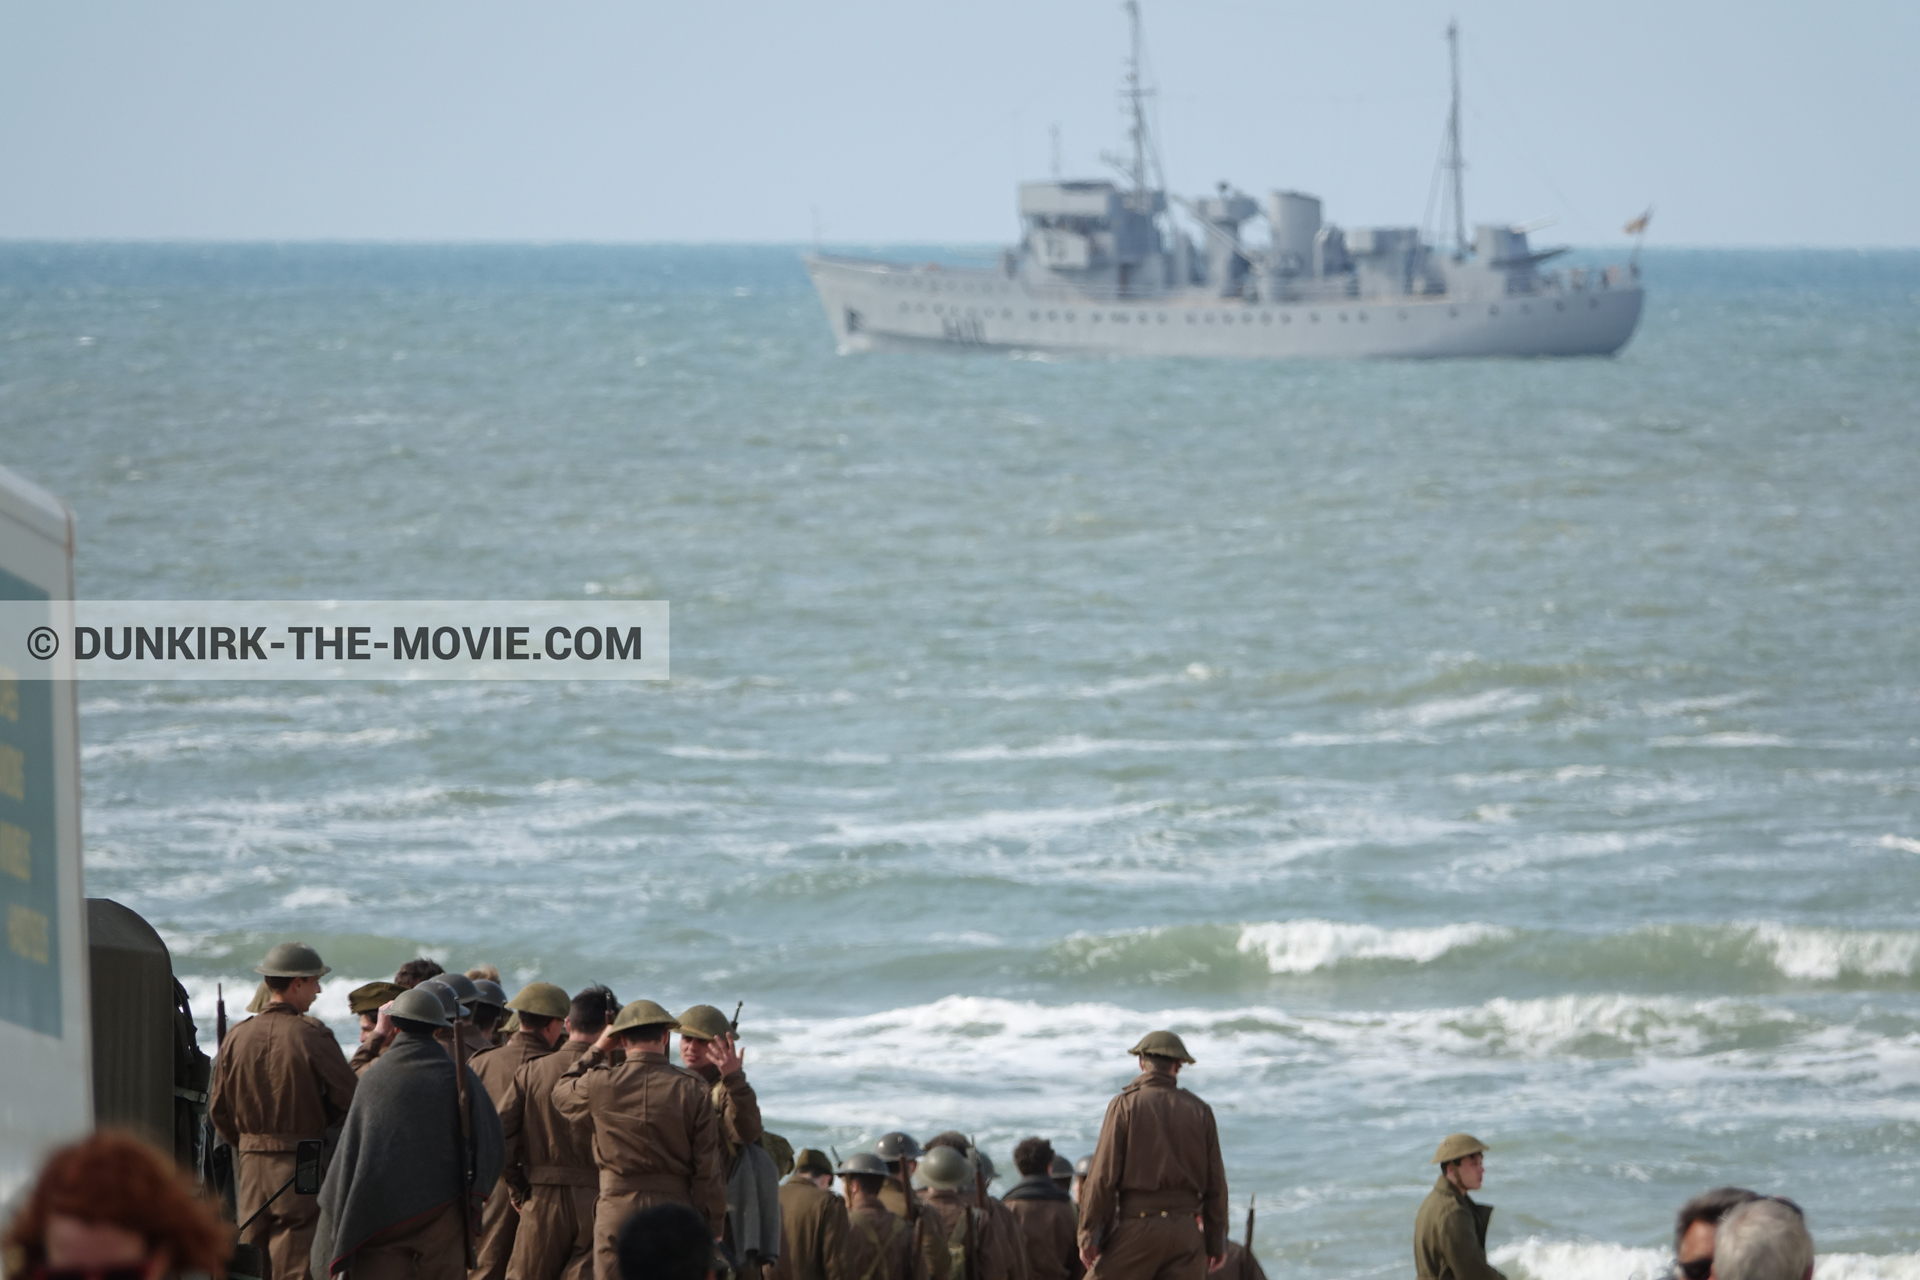 Fotos con barco, extras, mares agitados,  durante el rodaje de la película Dunkerque de Nolan